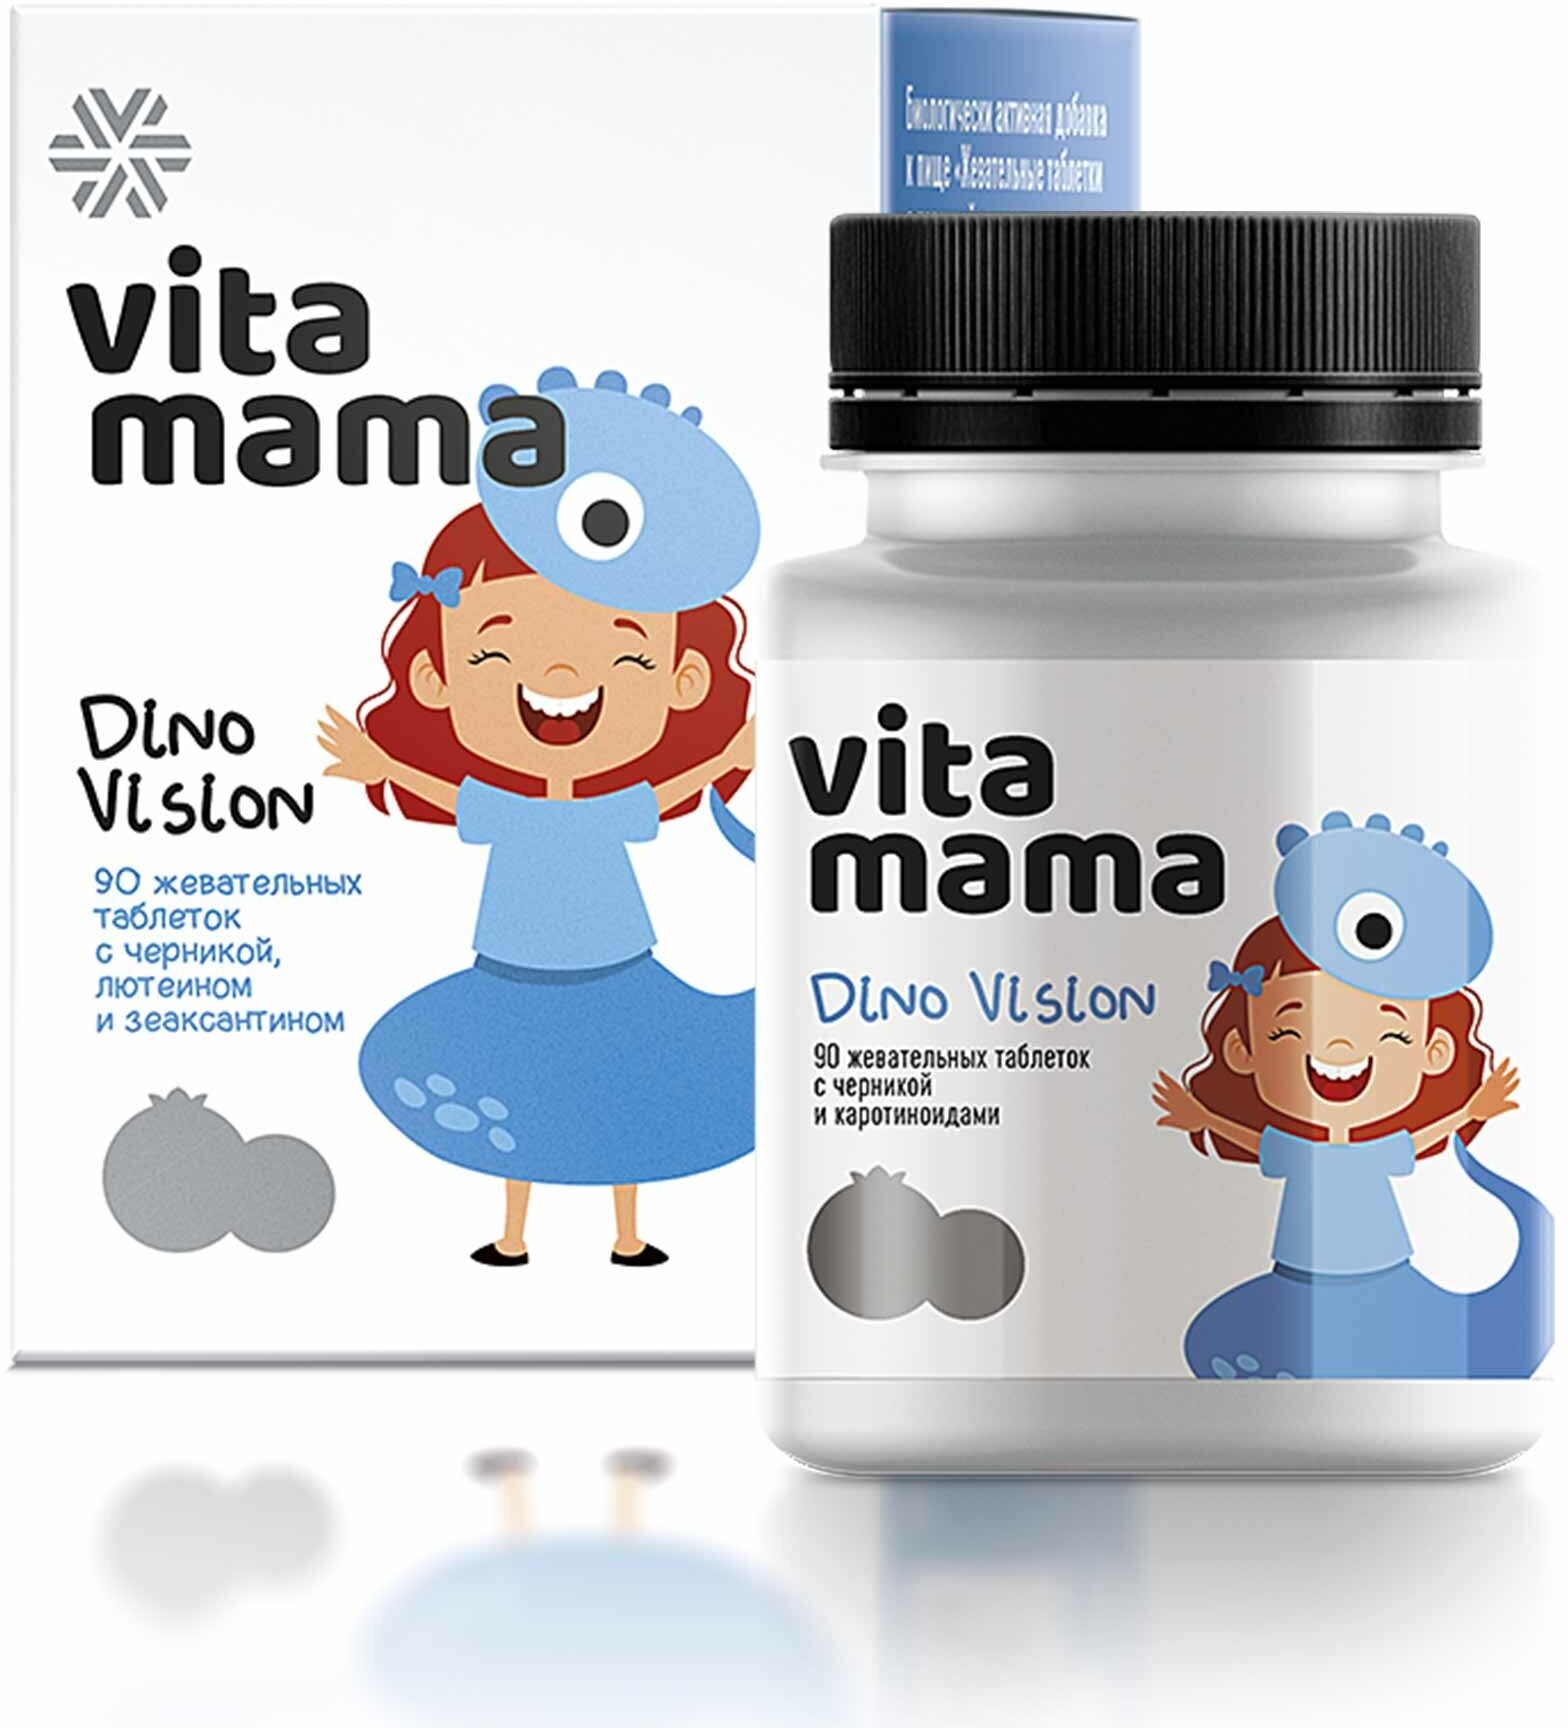 Жевательные таблетки с черникой лютеином и зеаксантином Dino Vision - Vitamama 90 таблеток по 600 мг.